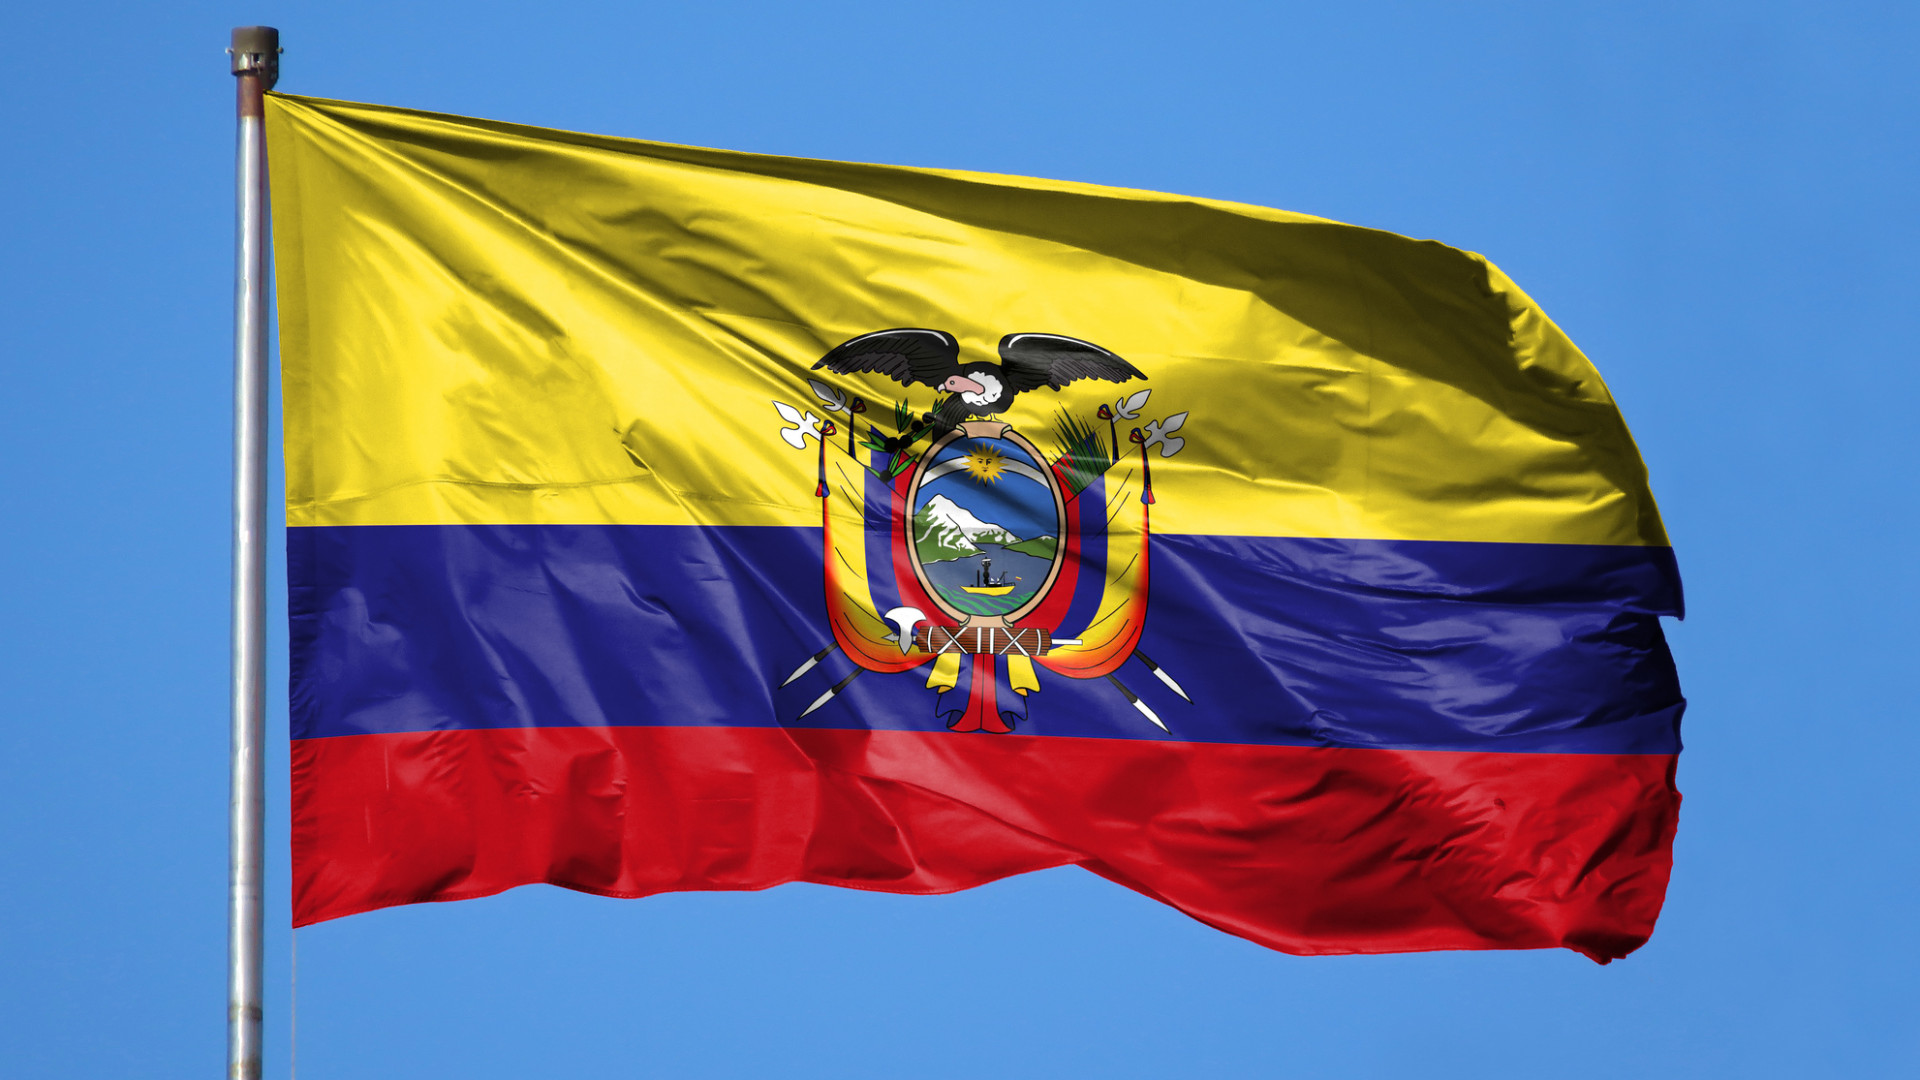 Propostas a referendar no Equador podem &quotdegradar Estado de Direito"